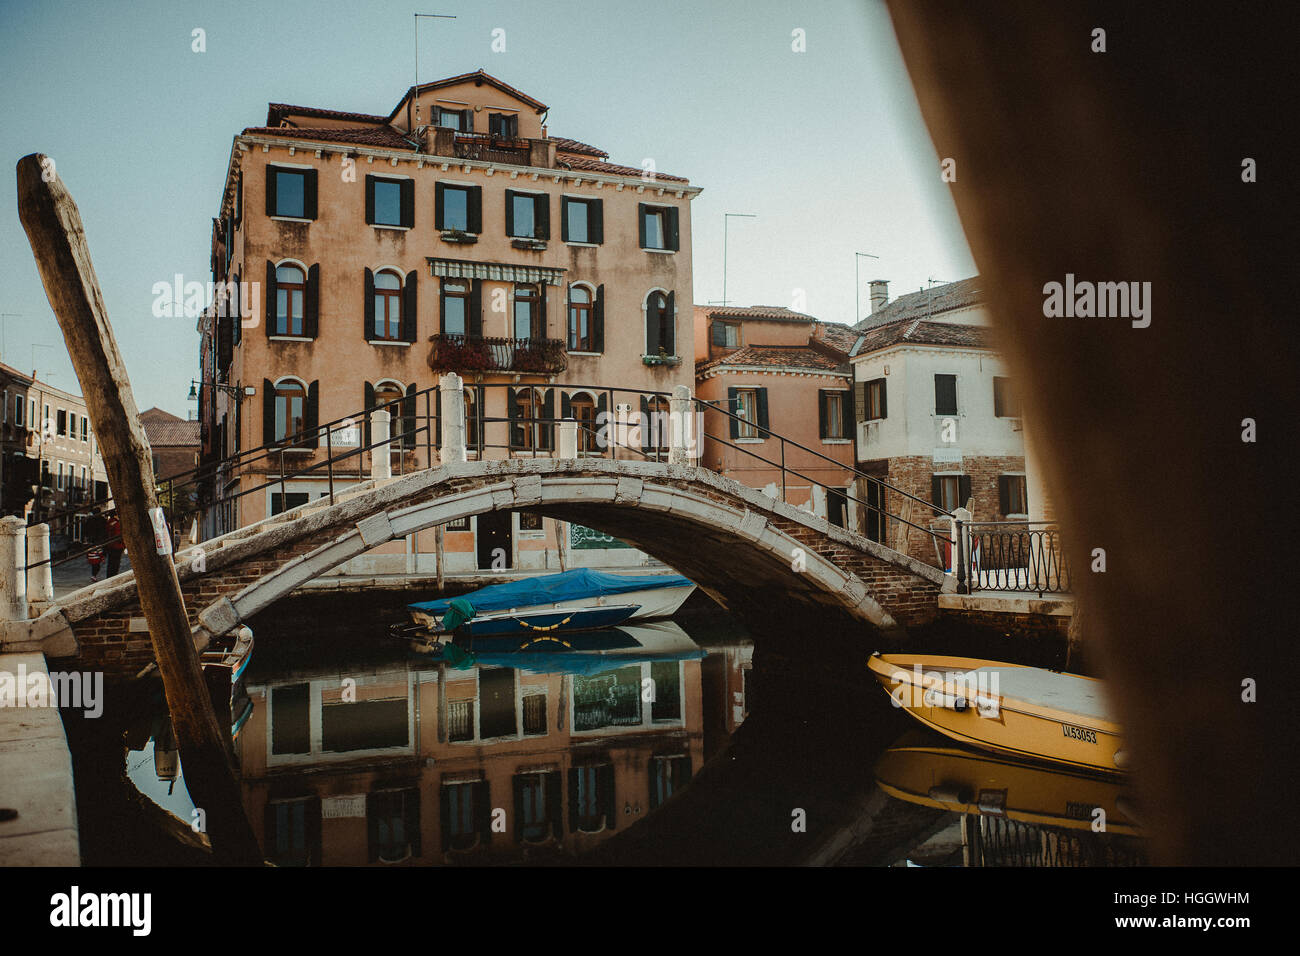 Un pont, quelques maisons et quelques bateaux à Venise. Ils sont tous reflétant dans l'eau du canal. Banque D'Images